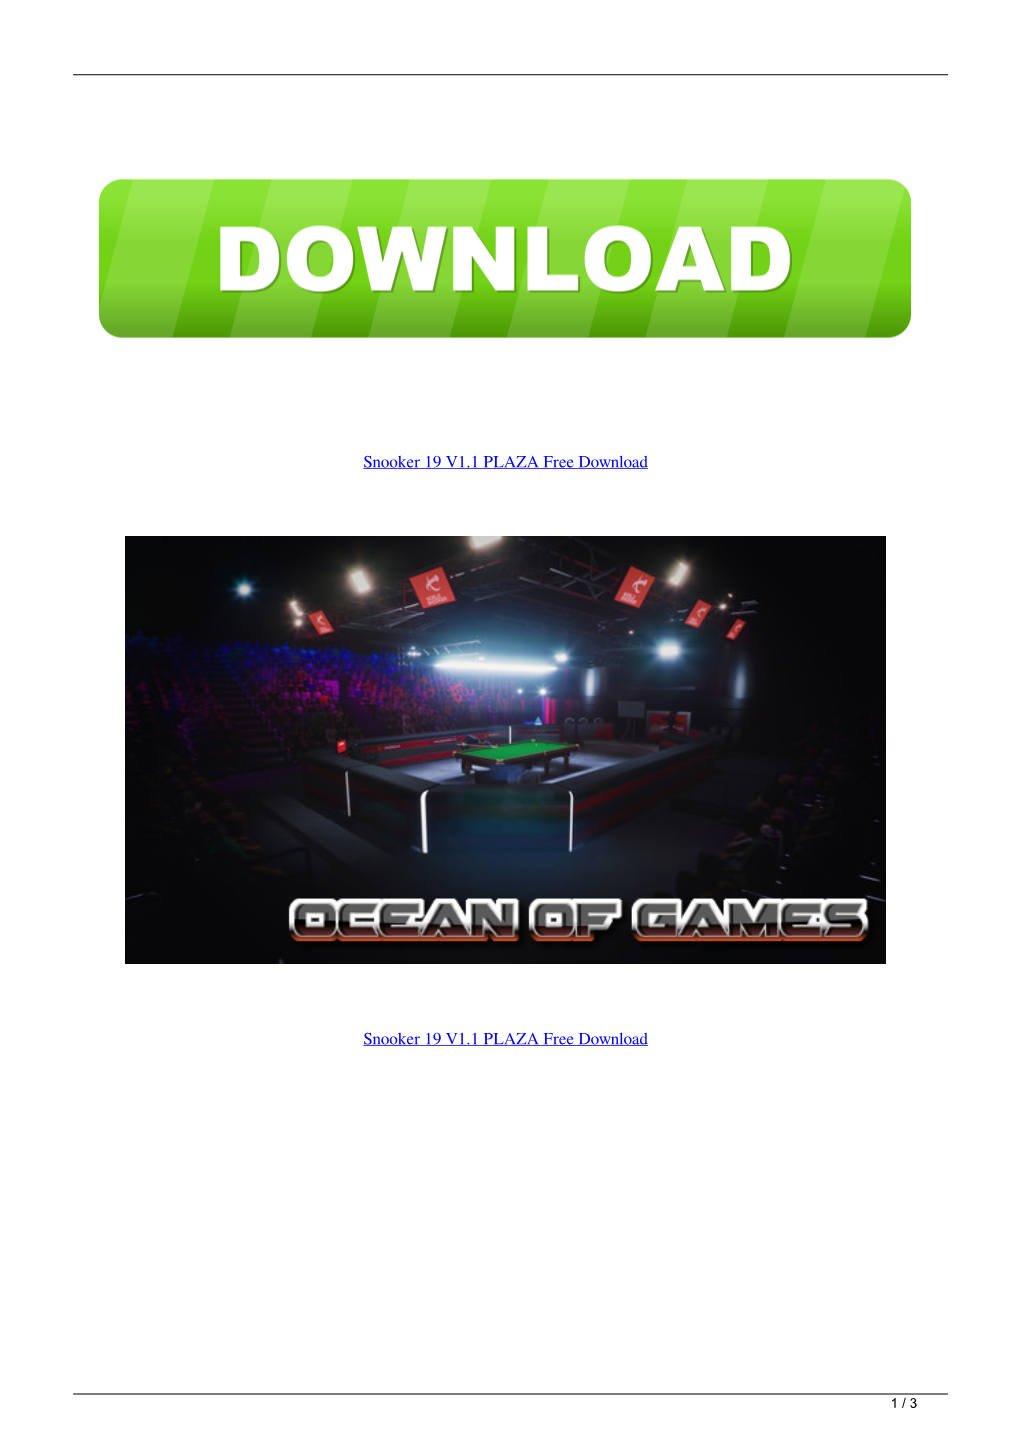 Snooker 19 V11 PLAZA Free Download